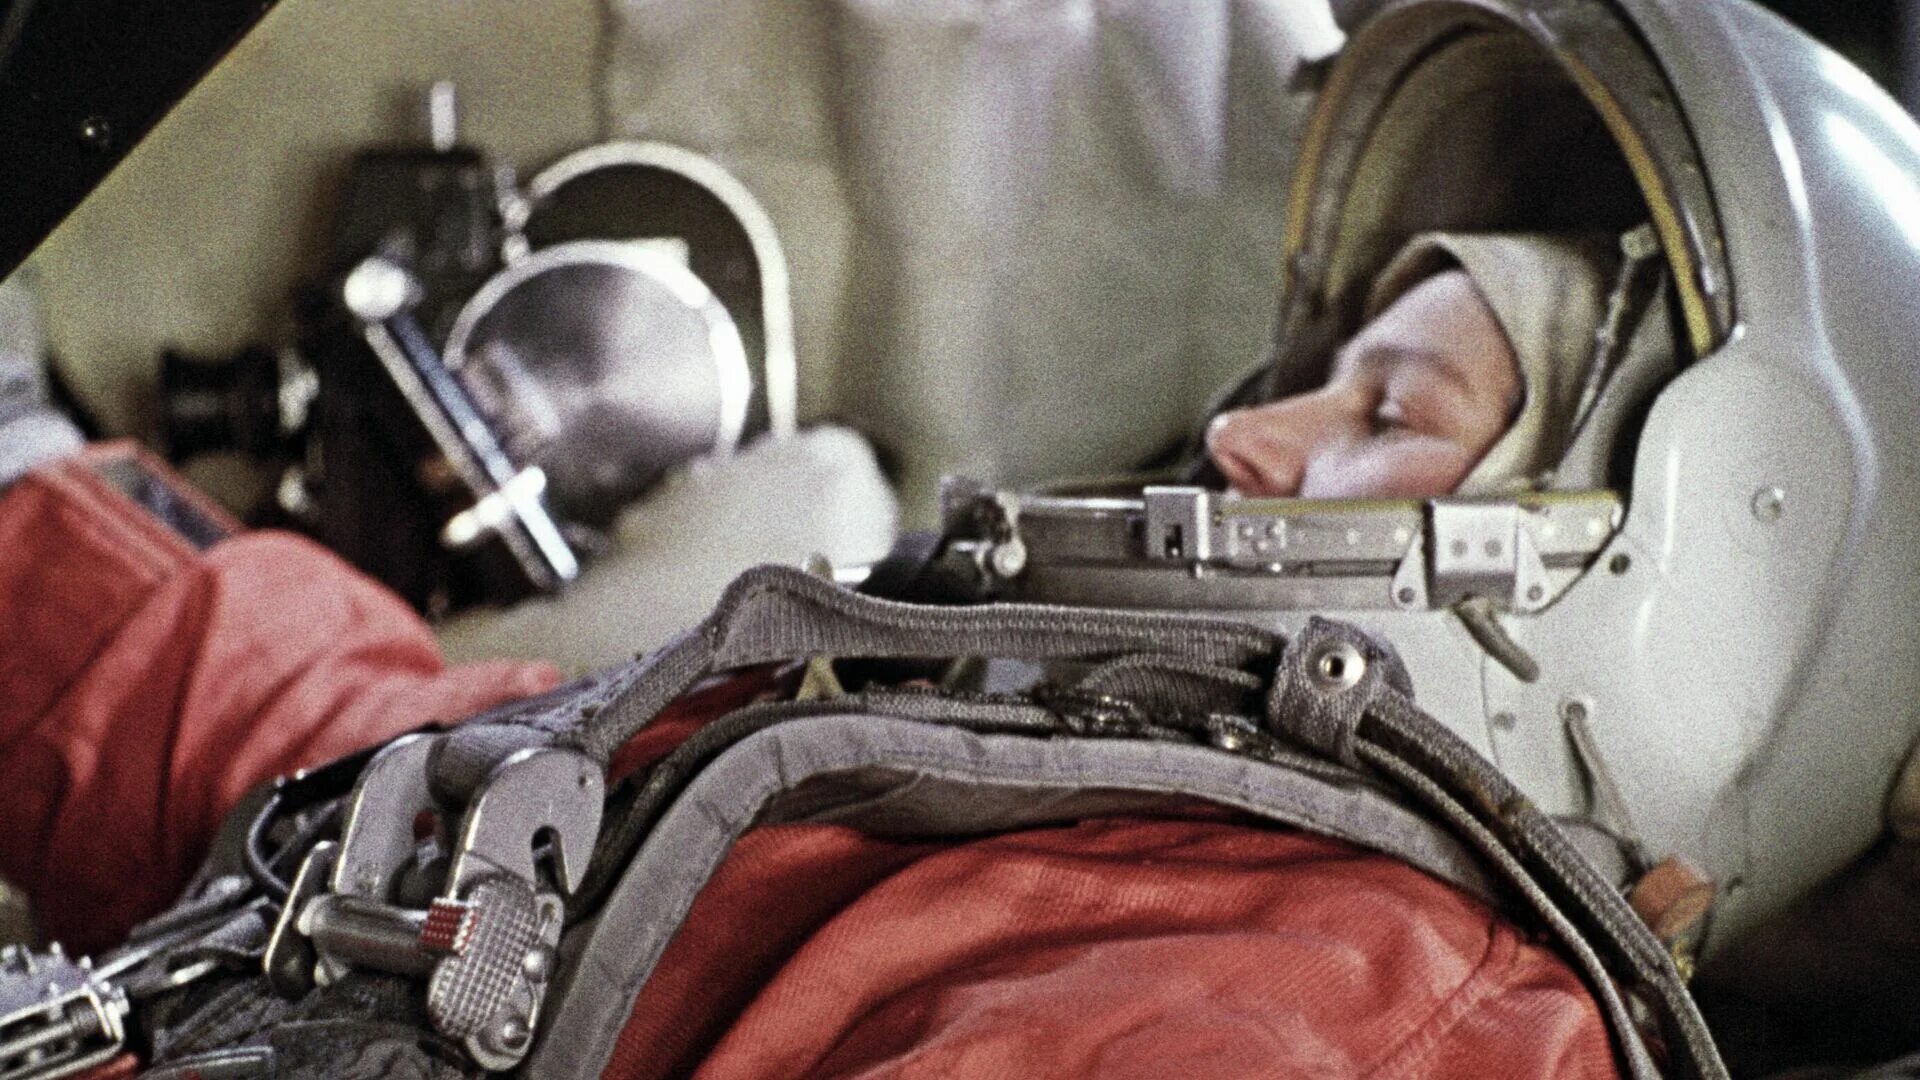 16 июня первая женщина космонавт 1963. Космический корабль Валентины Терешковой. Восток-6 космический корабль Терешковой.